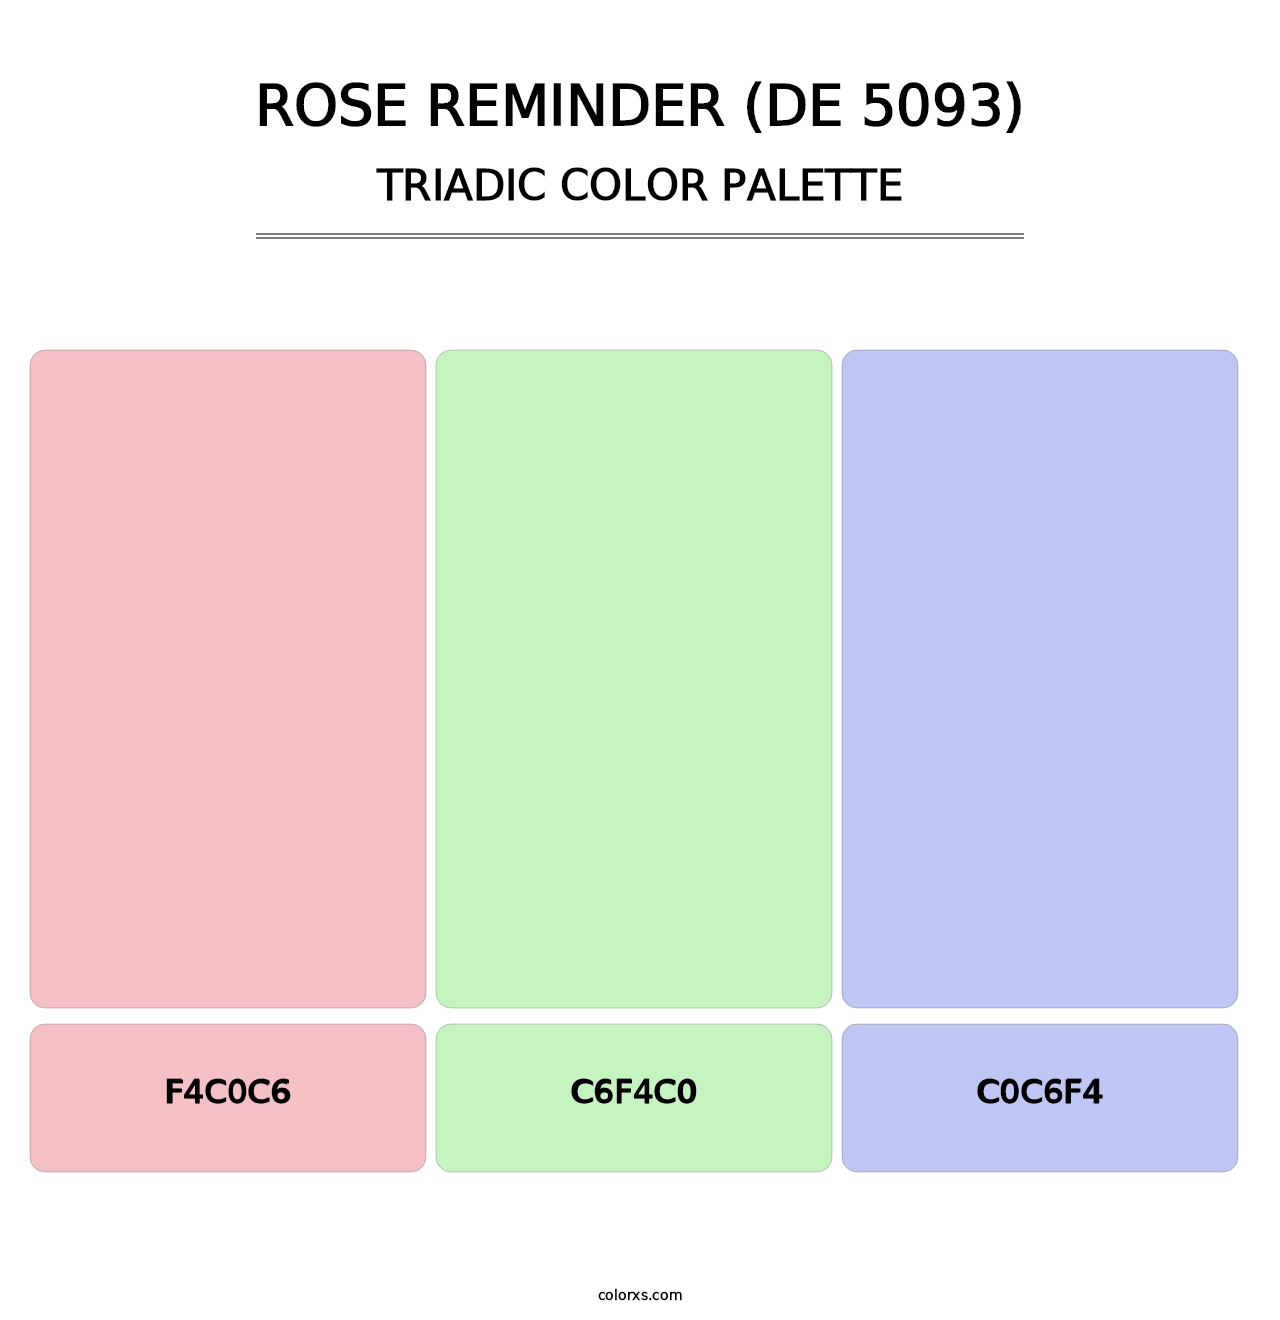 Rose Reminder (DE 5093) - Triadic Color Palette